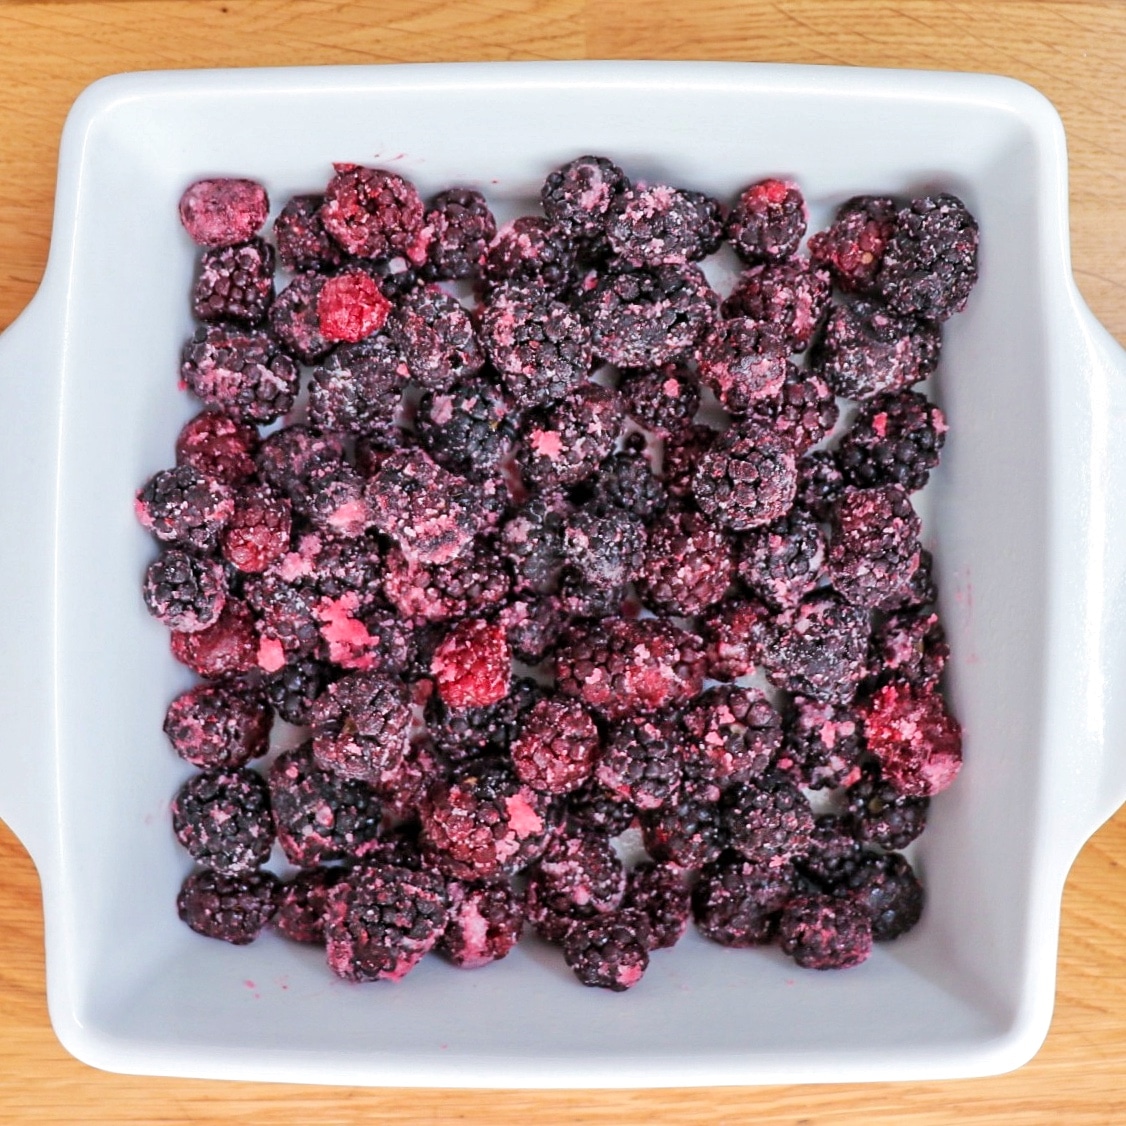 frozen blackberry desserts: blackberry cobbler with frozen berries